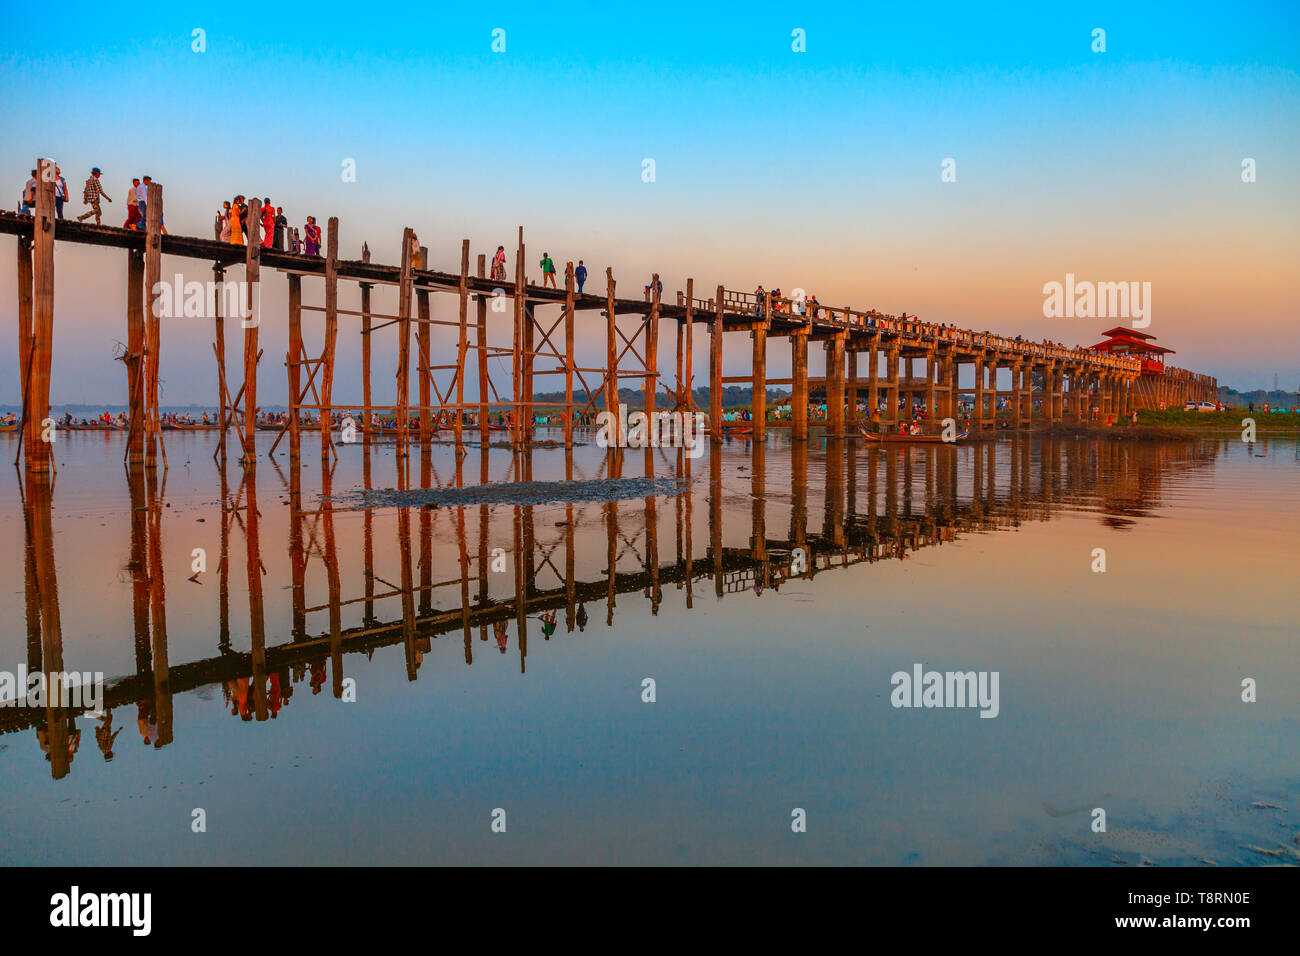 U Bein Bridge in Amarapura (Myanmar) Stock Photo